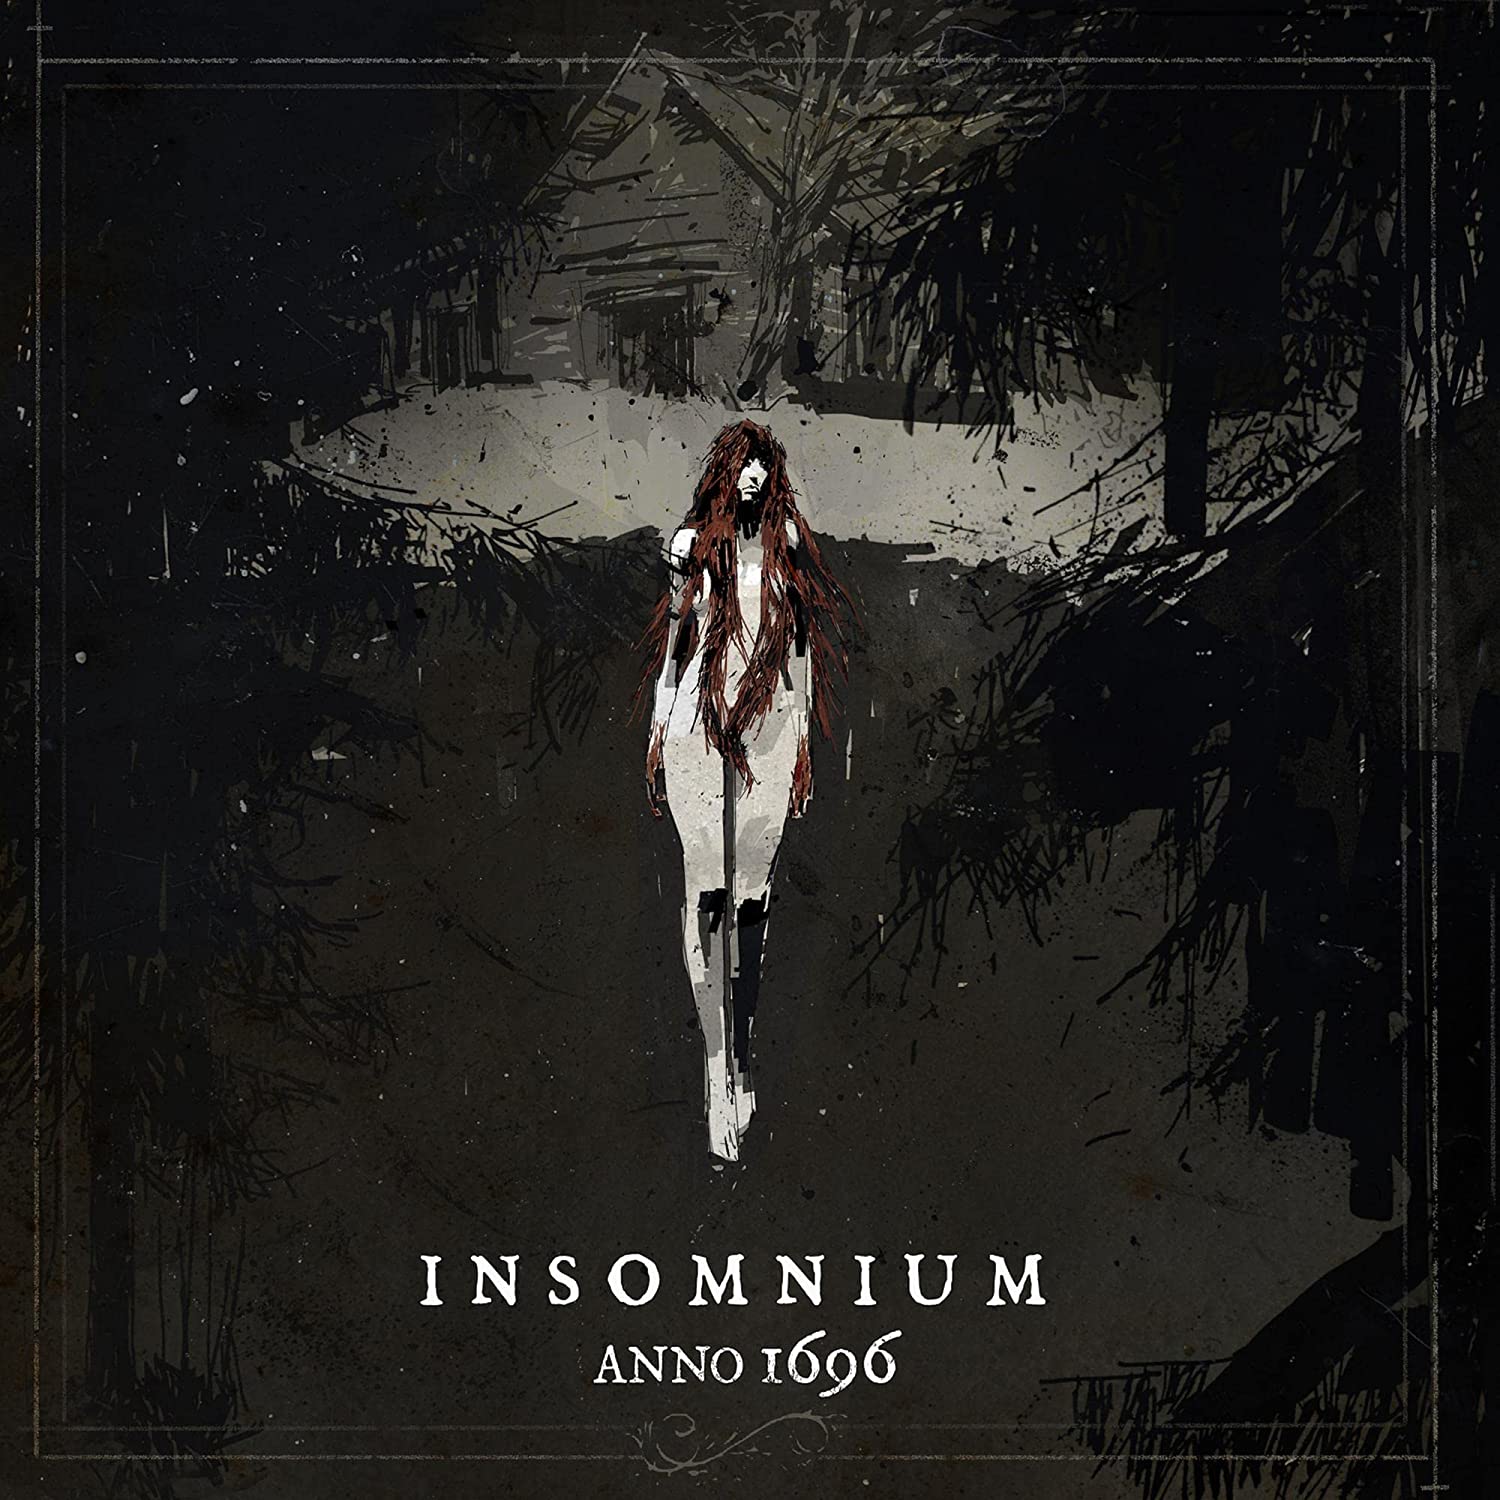 Insomnium Anno 1696 Deluxe 2CD [Importado]